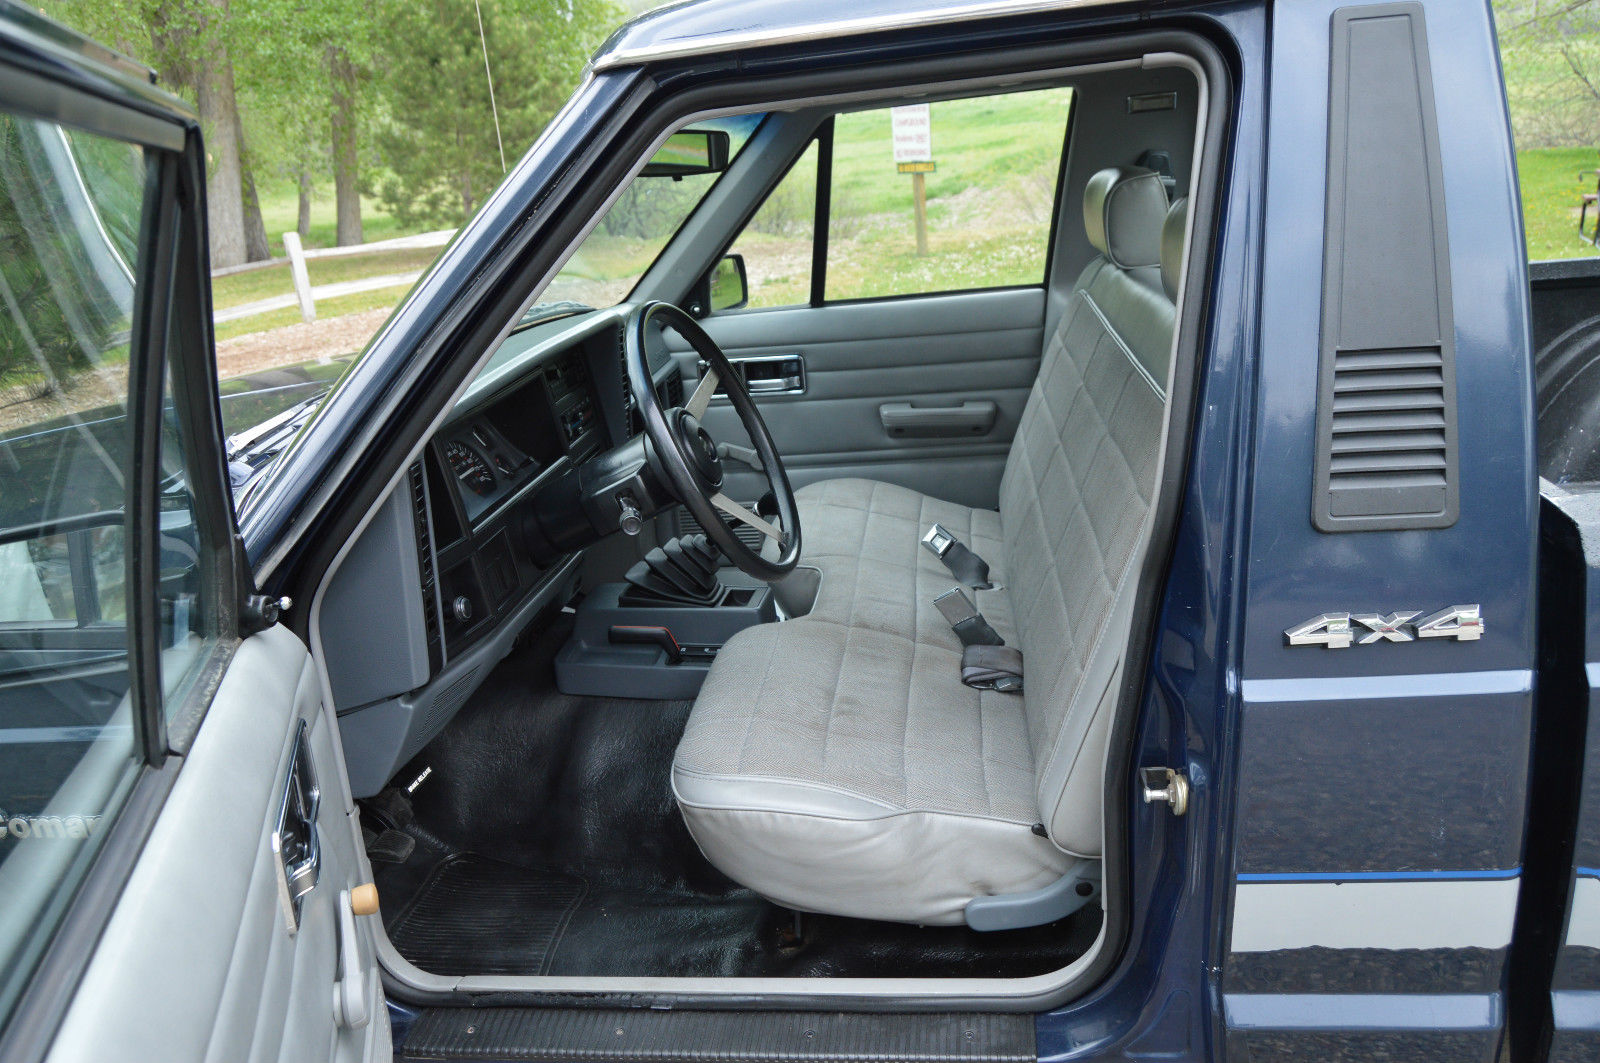 1991 Jeep Comanche SPORT 4x4 Rare Truck For Sale on Ebay. 